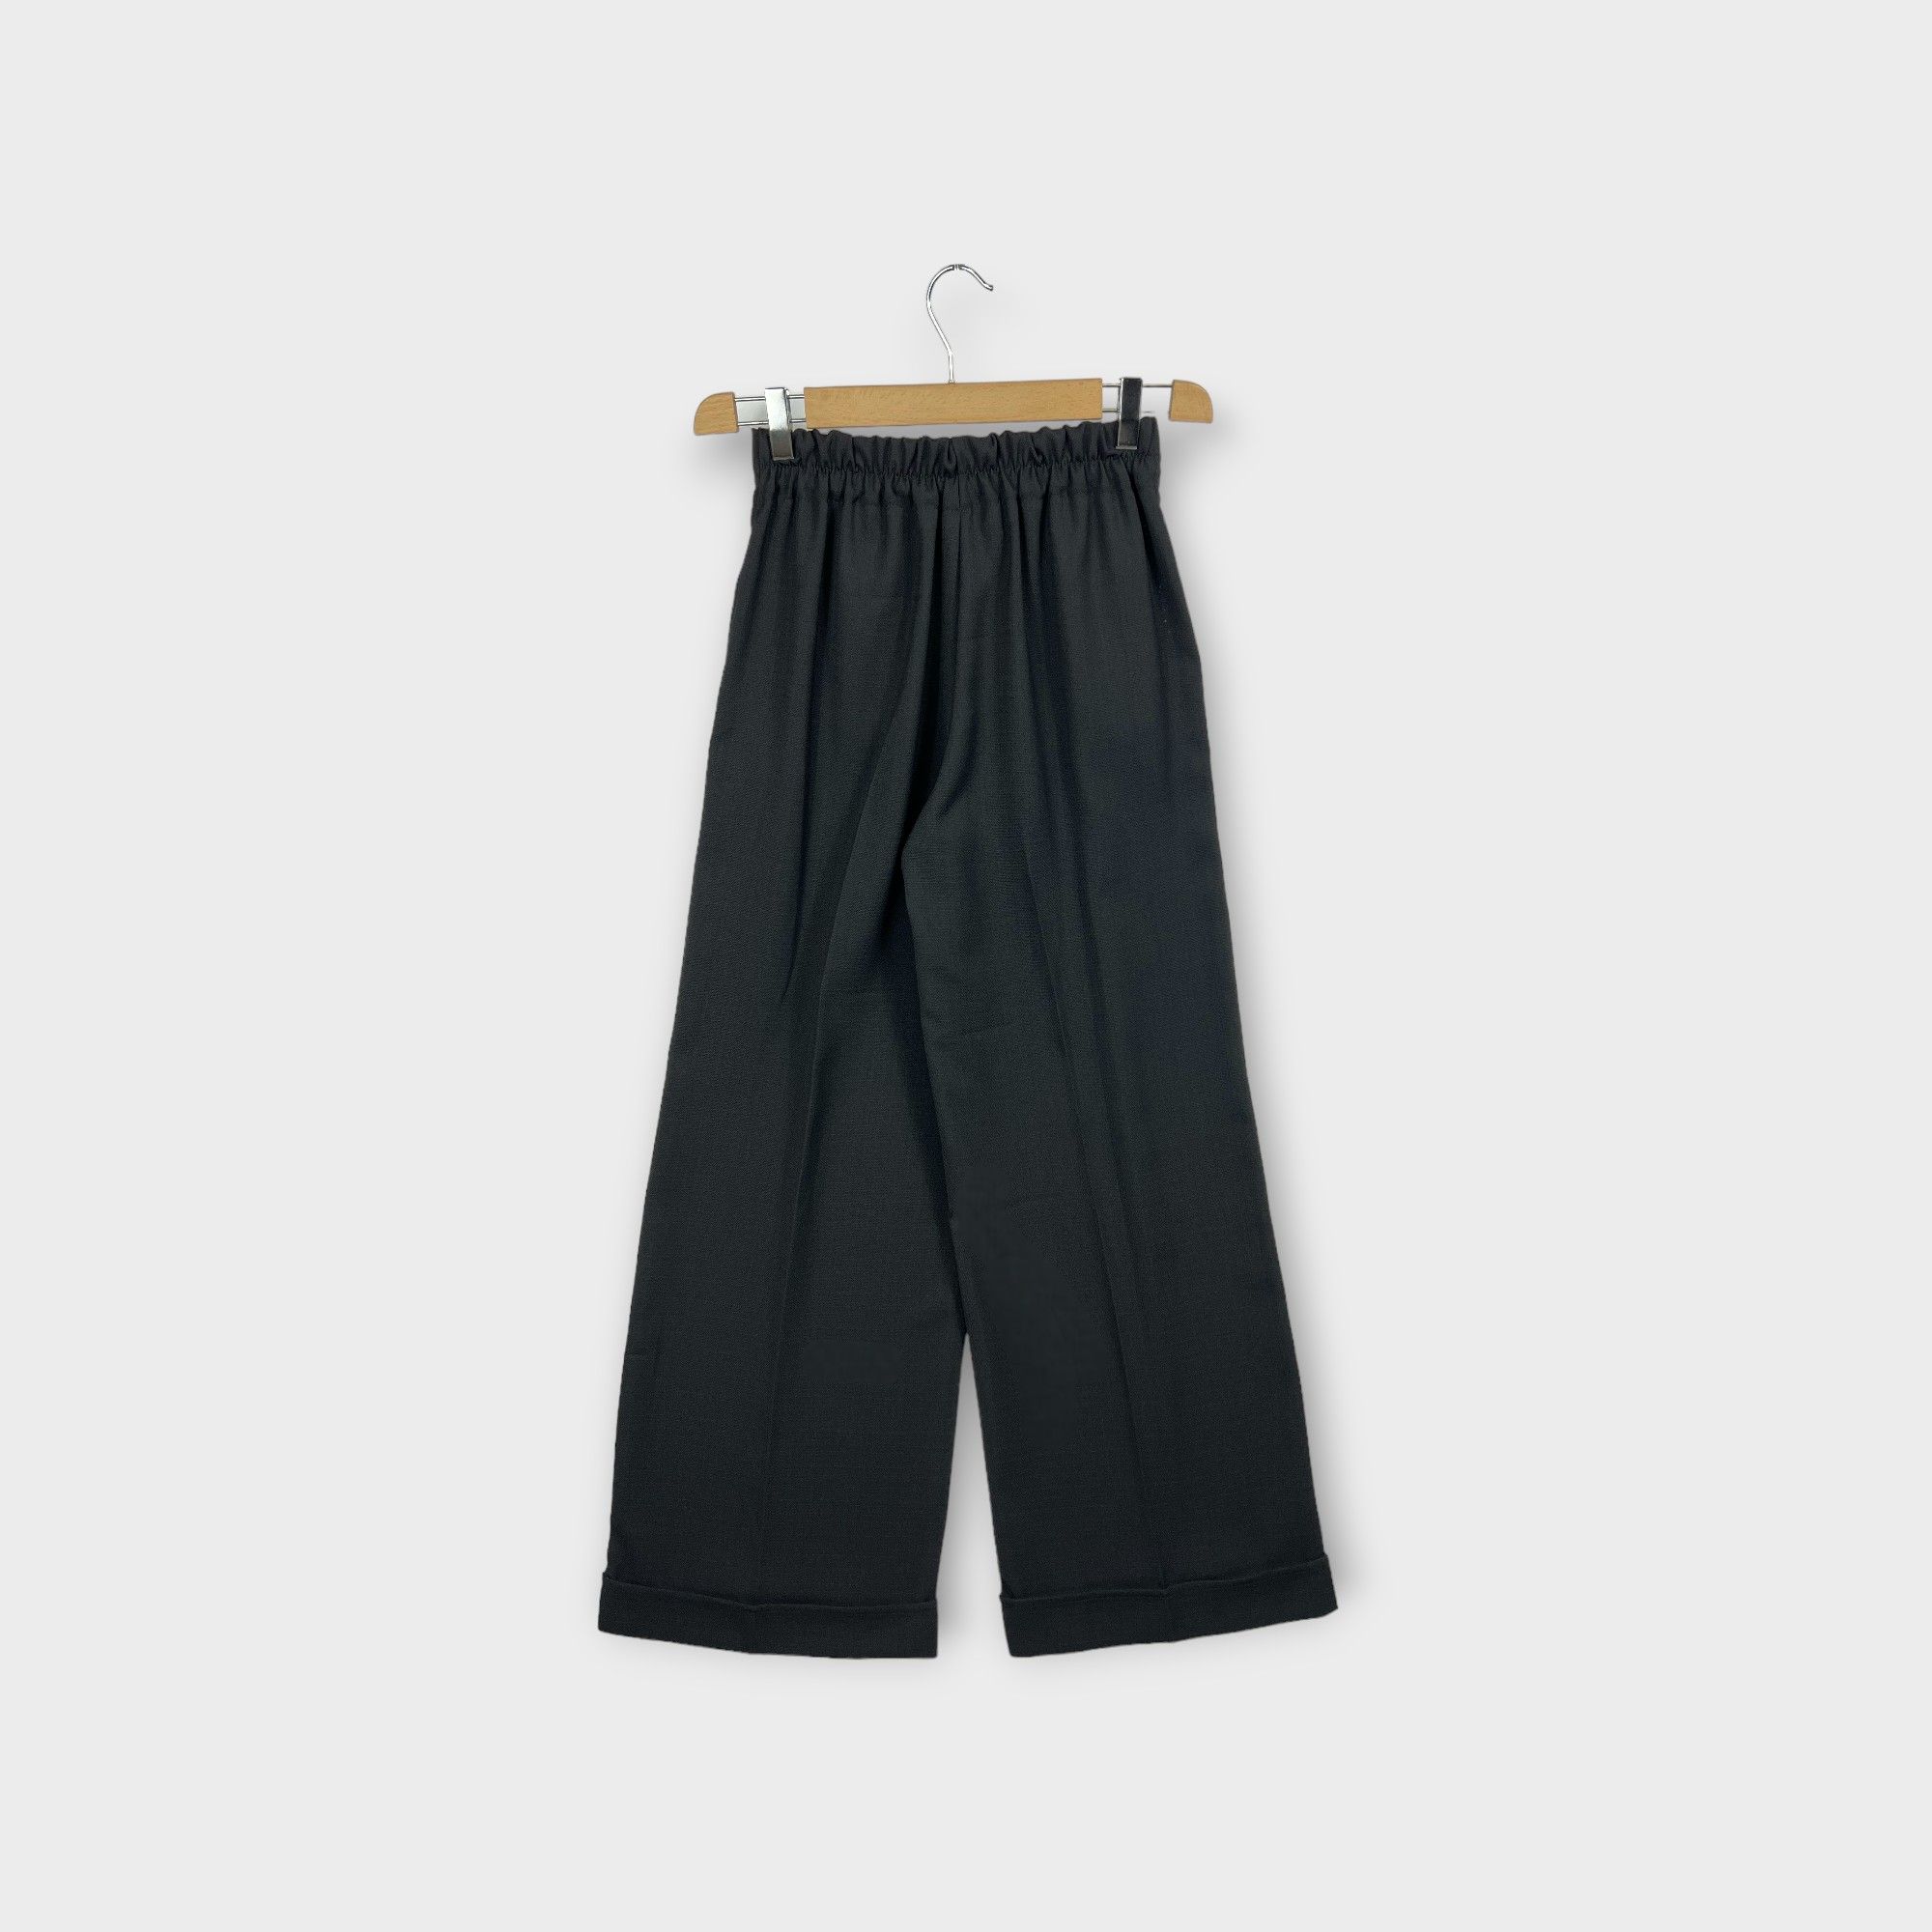 images/virtuemart/product/HELLEH pantaloni donna modello palazzo con pinces e risvolto al fondo colore nero 2.jpg